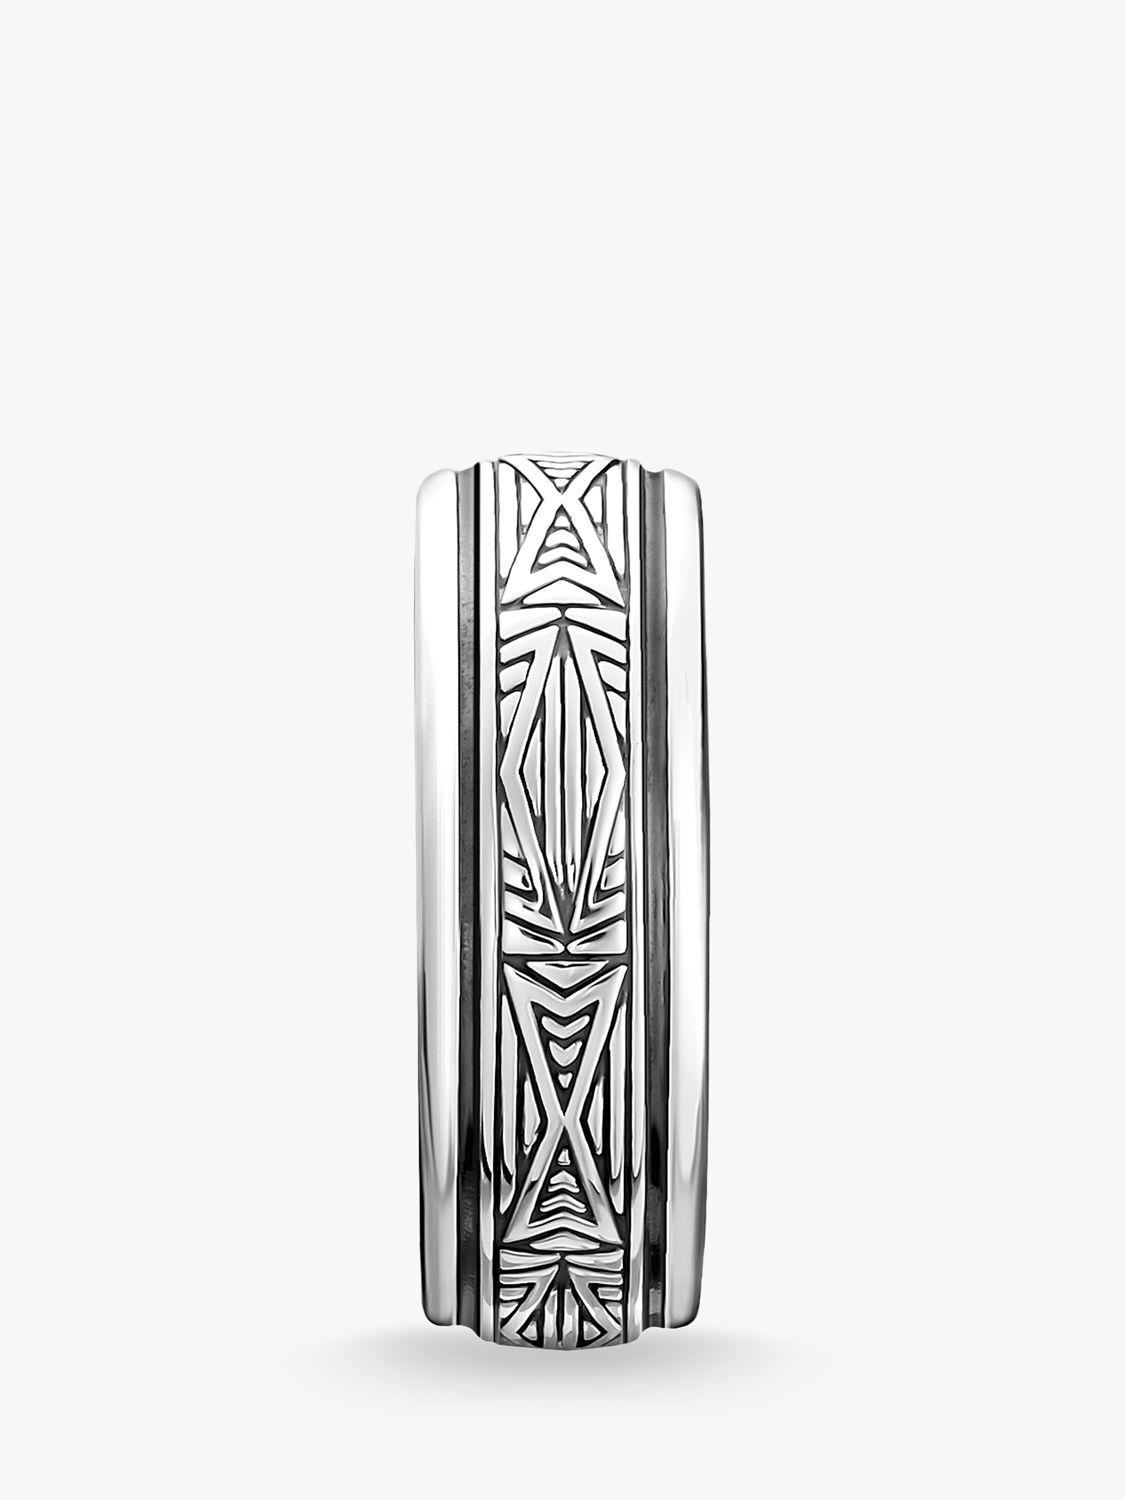 Buy THOMAS SABO Men's Rebel Textured Ring, Silver Online at johnlewis.com